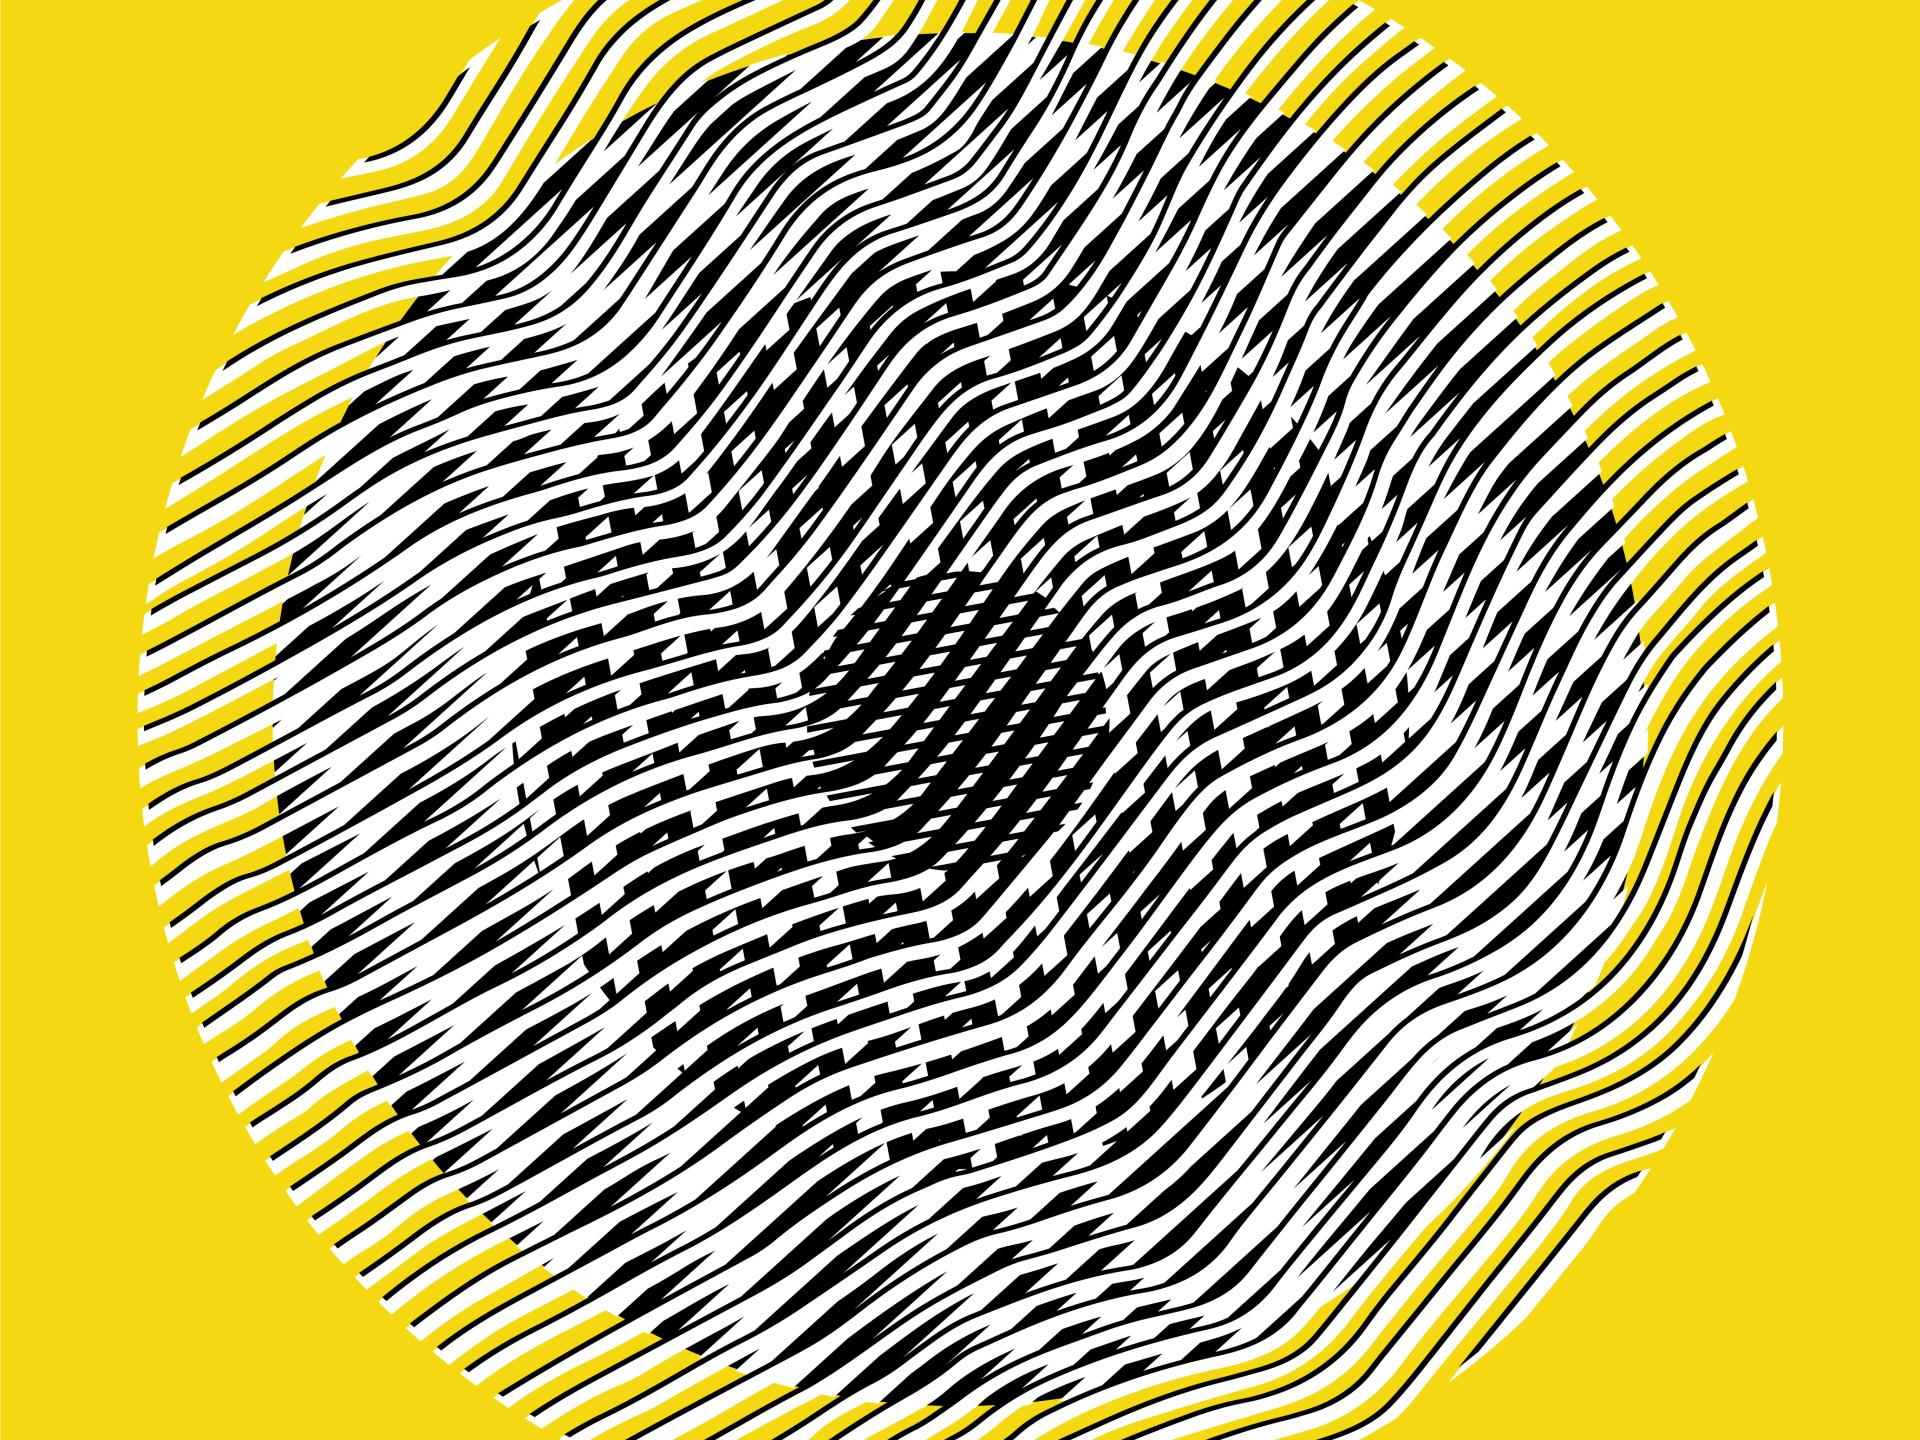 Figura circular con tramas onduladas superpuestas, sobre fondo amarillo